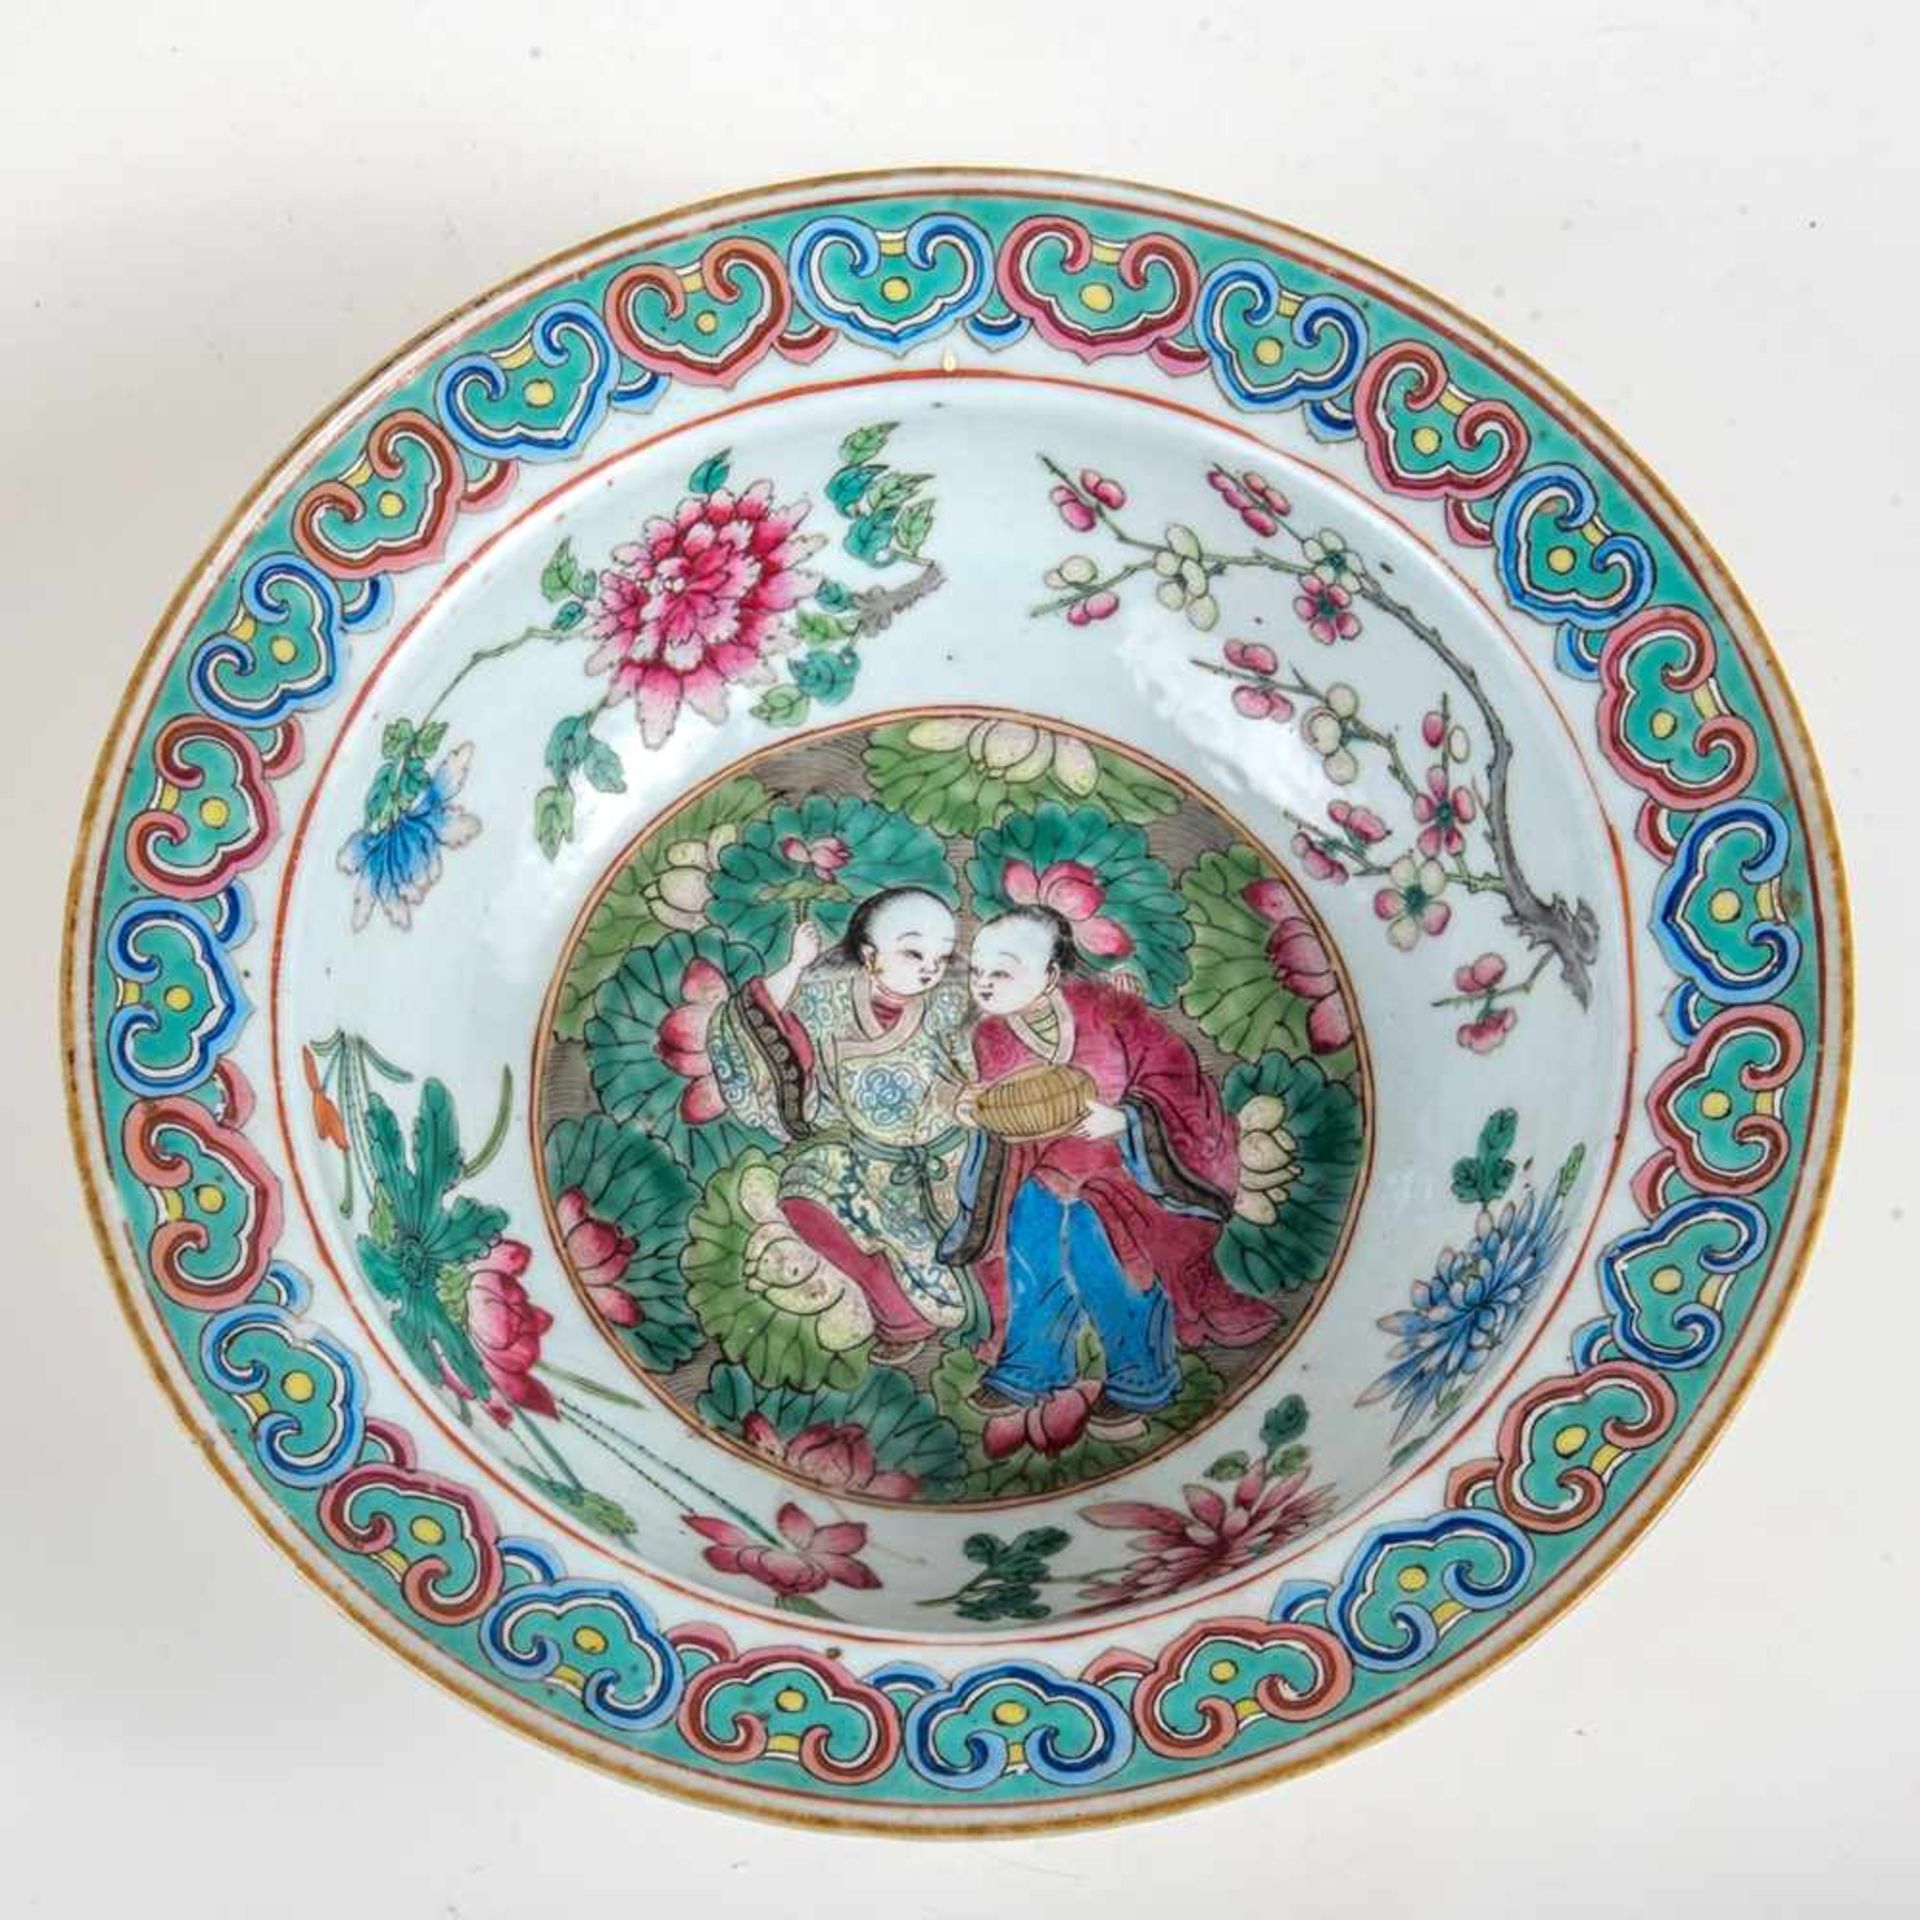 Große Schale Famille rose, China 19. Jh.Porzellan. Im Spiegel ein Paar , Wandung mit Blüten und - Image 2 of 2